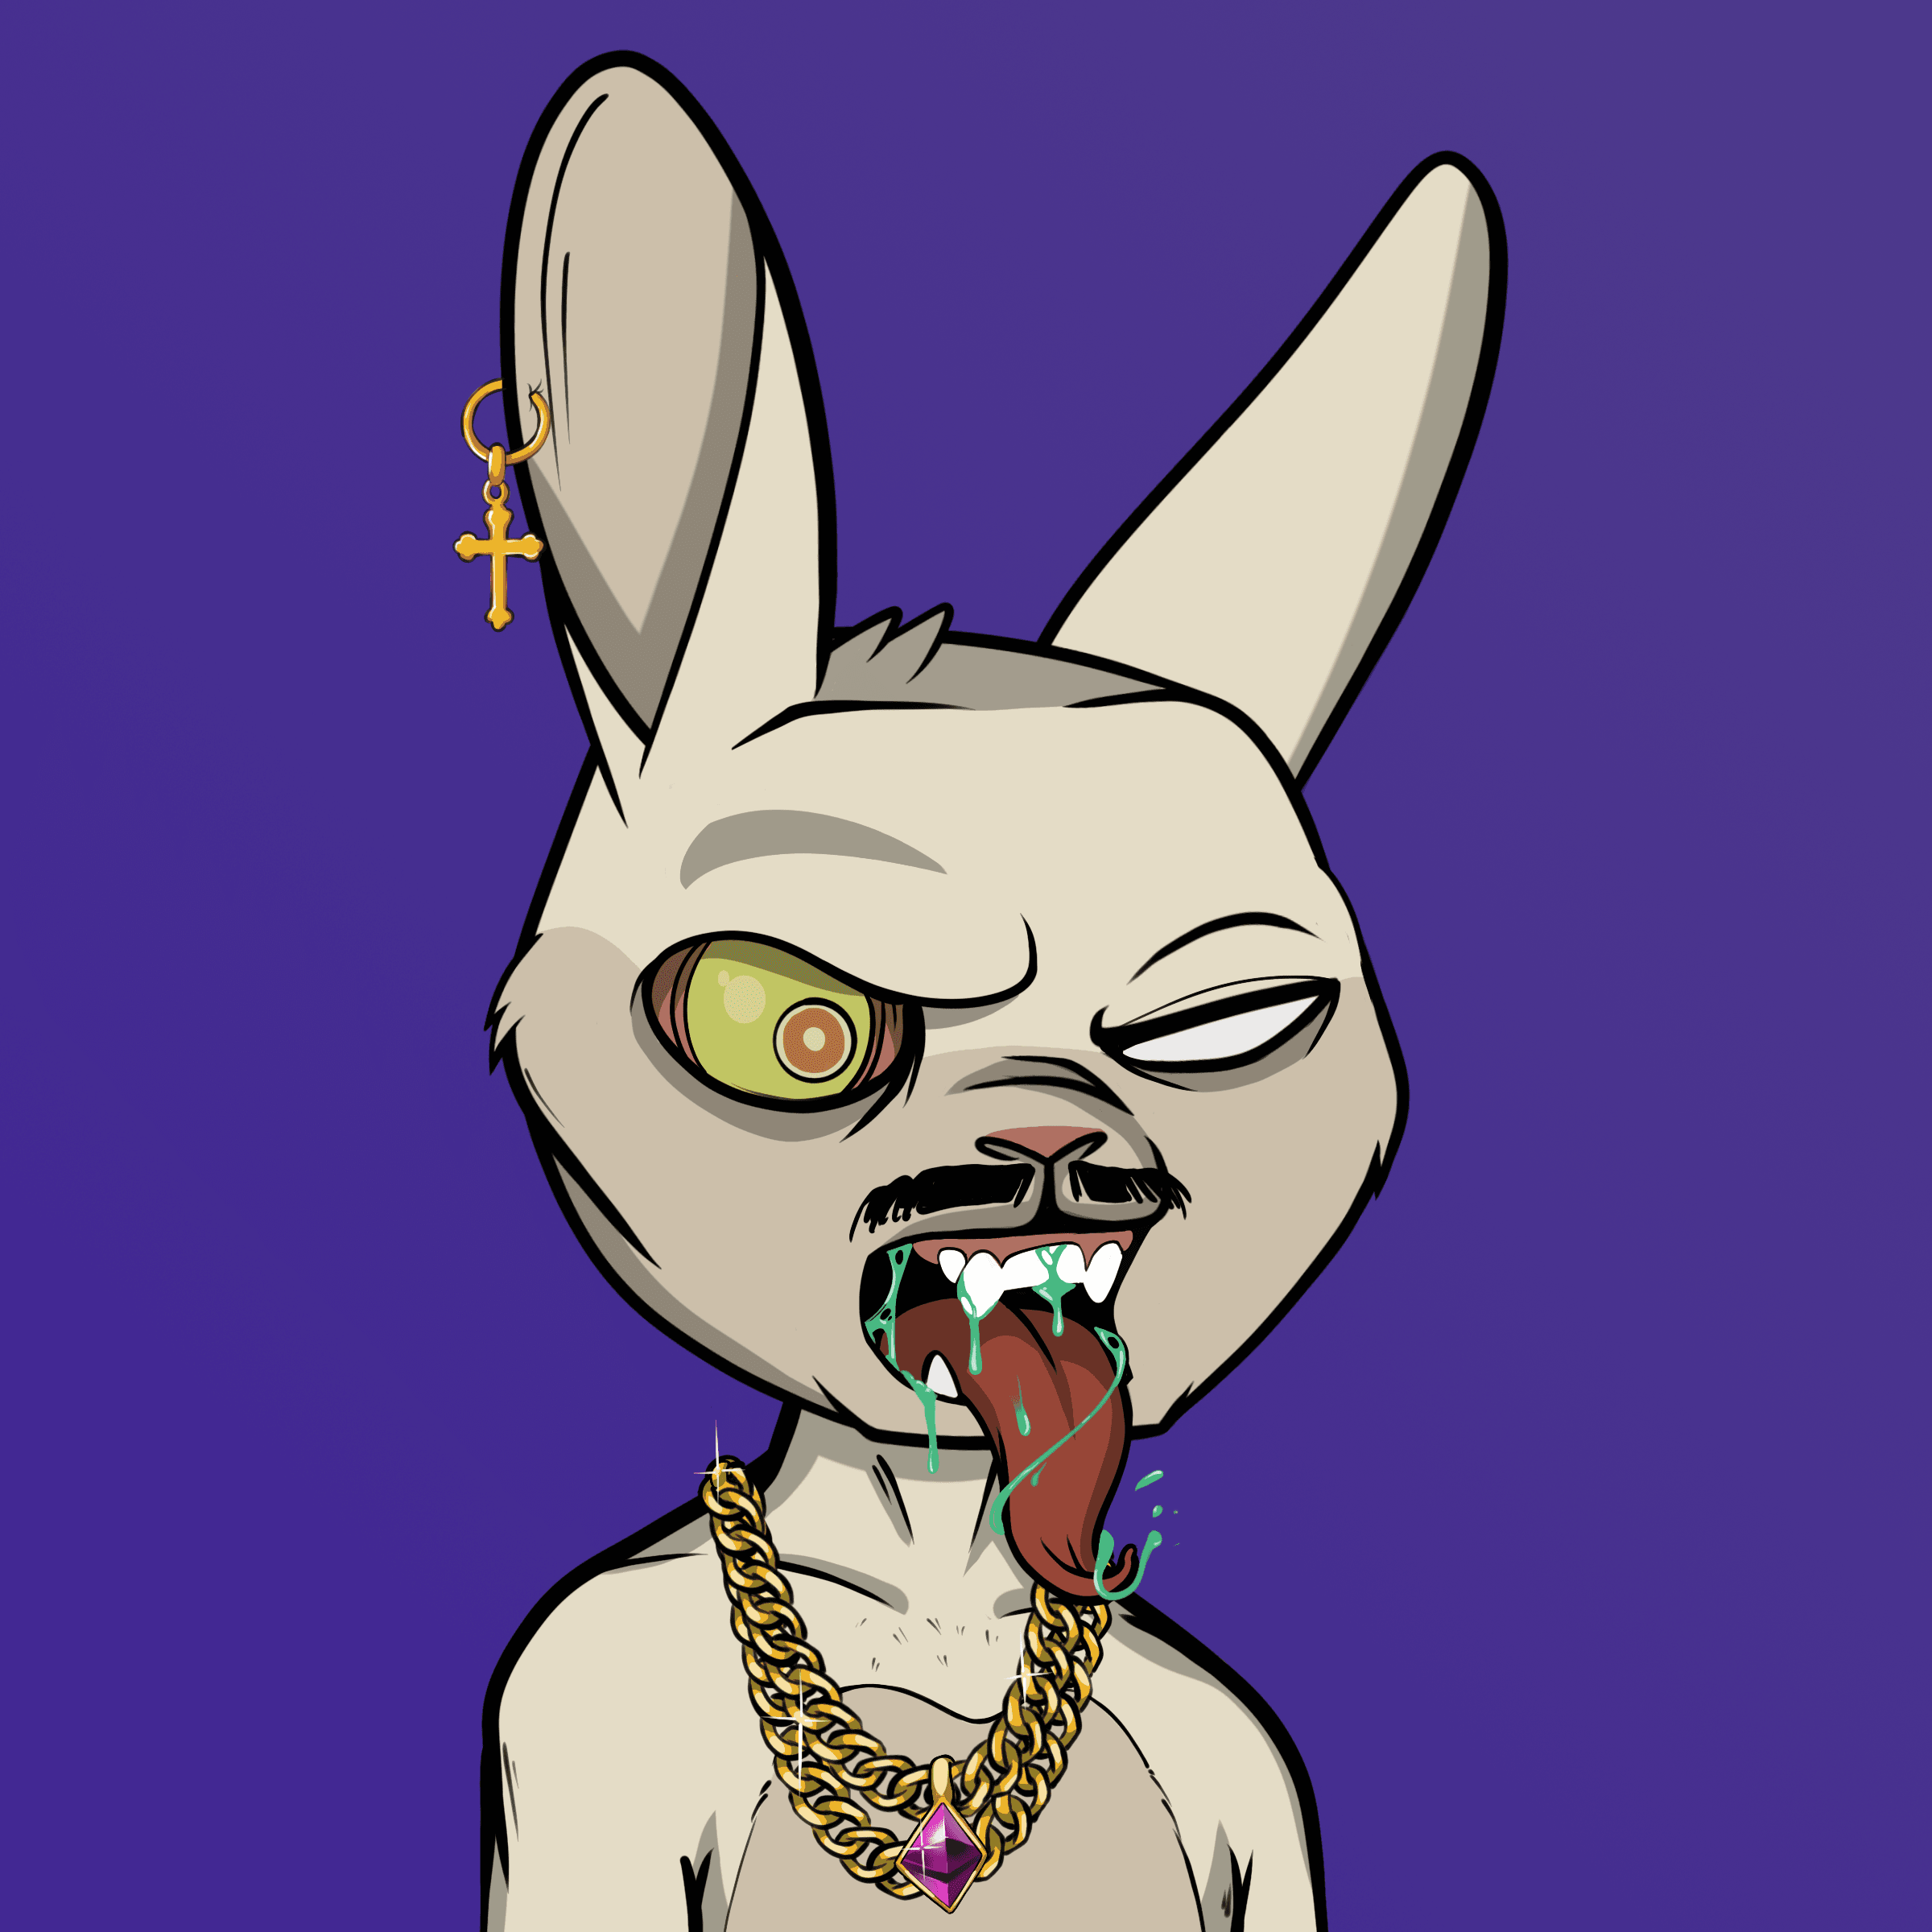 Mad Rabbit #4600